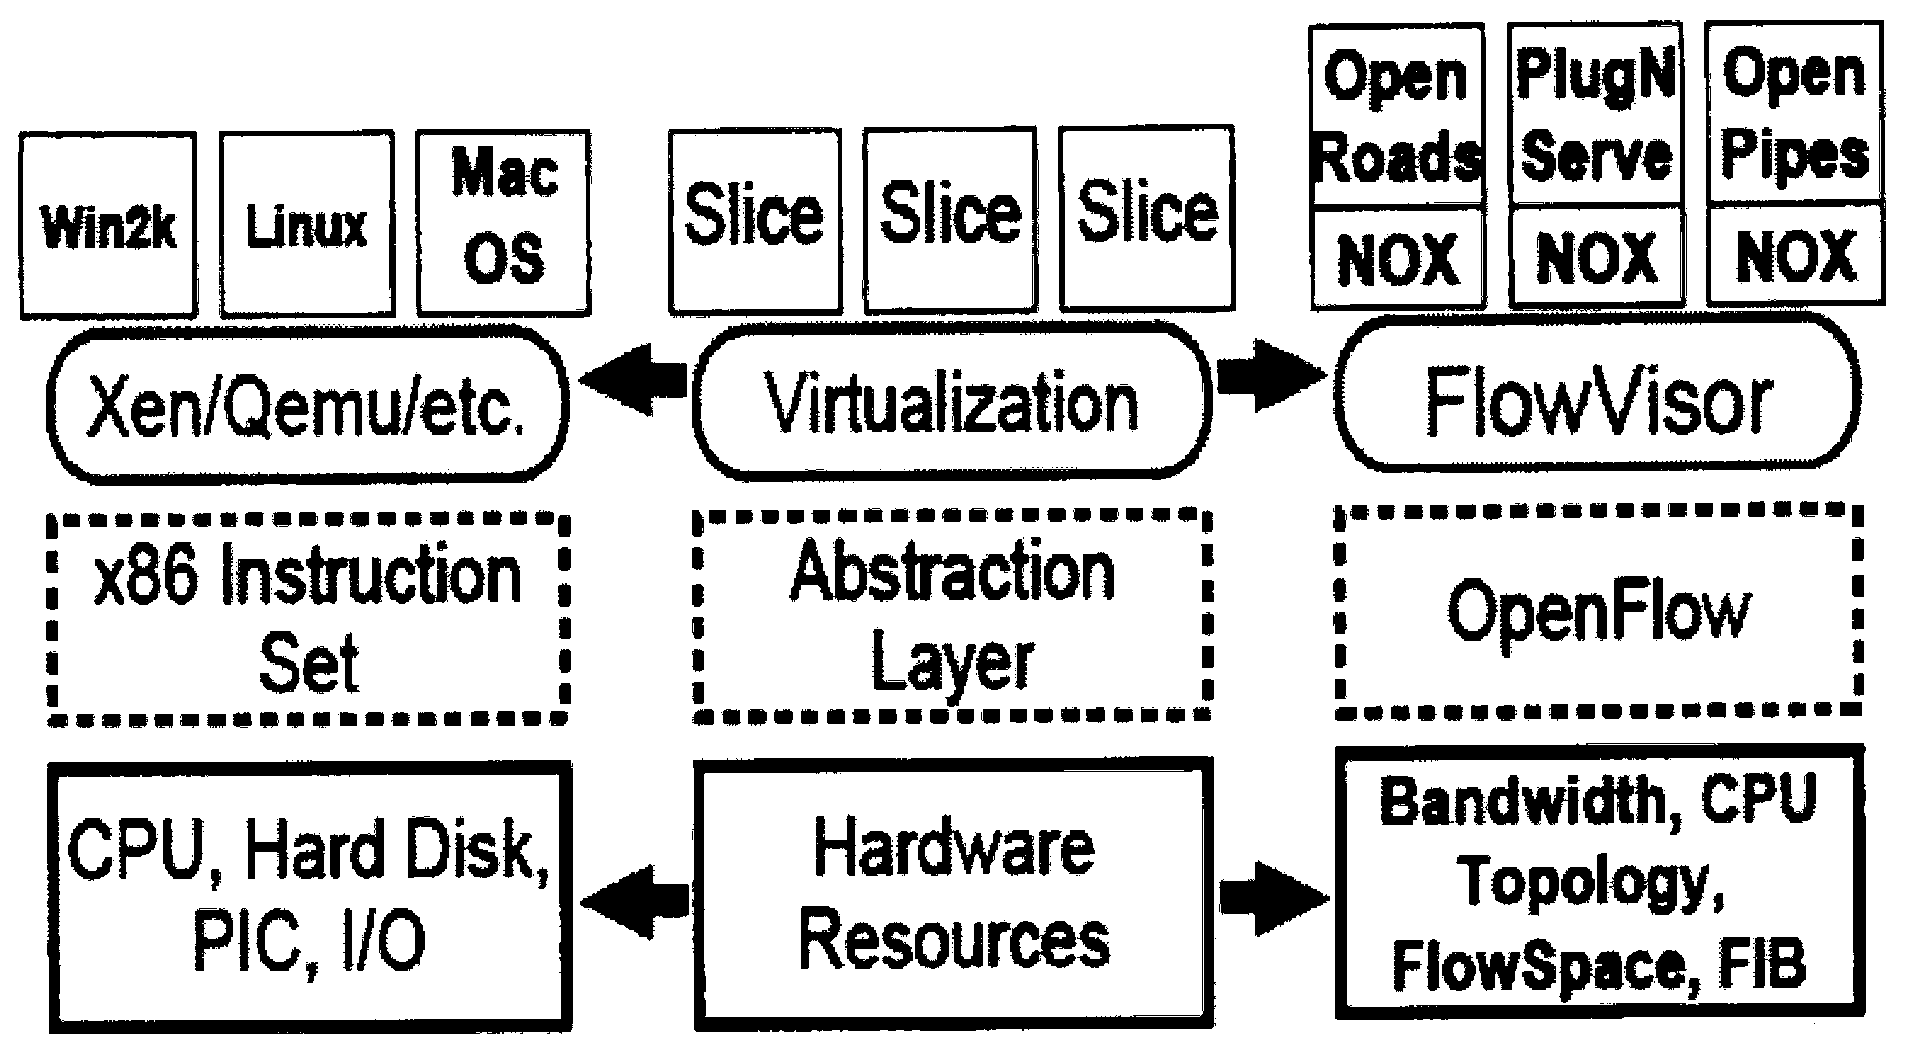 OpenFlow-based FlowVisor network system